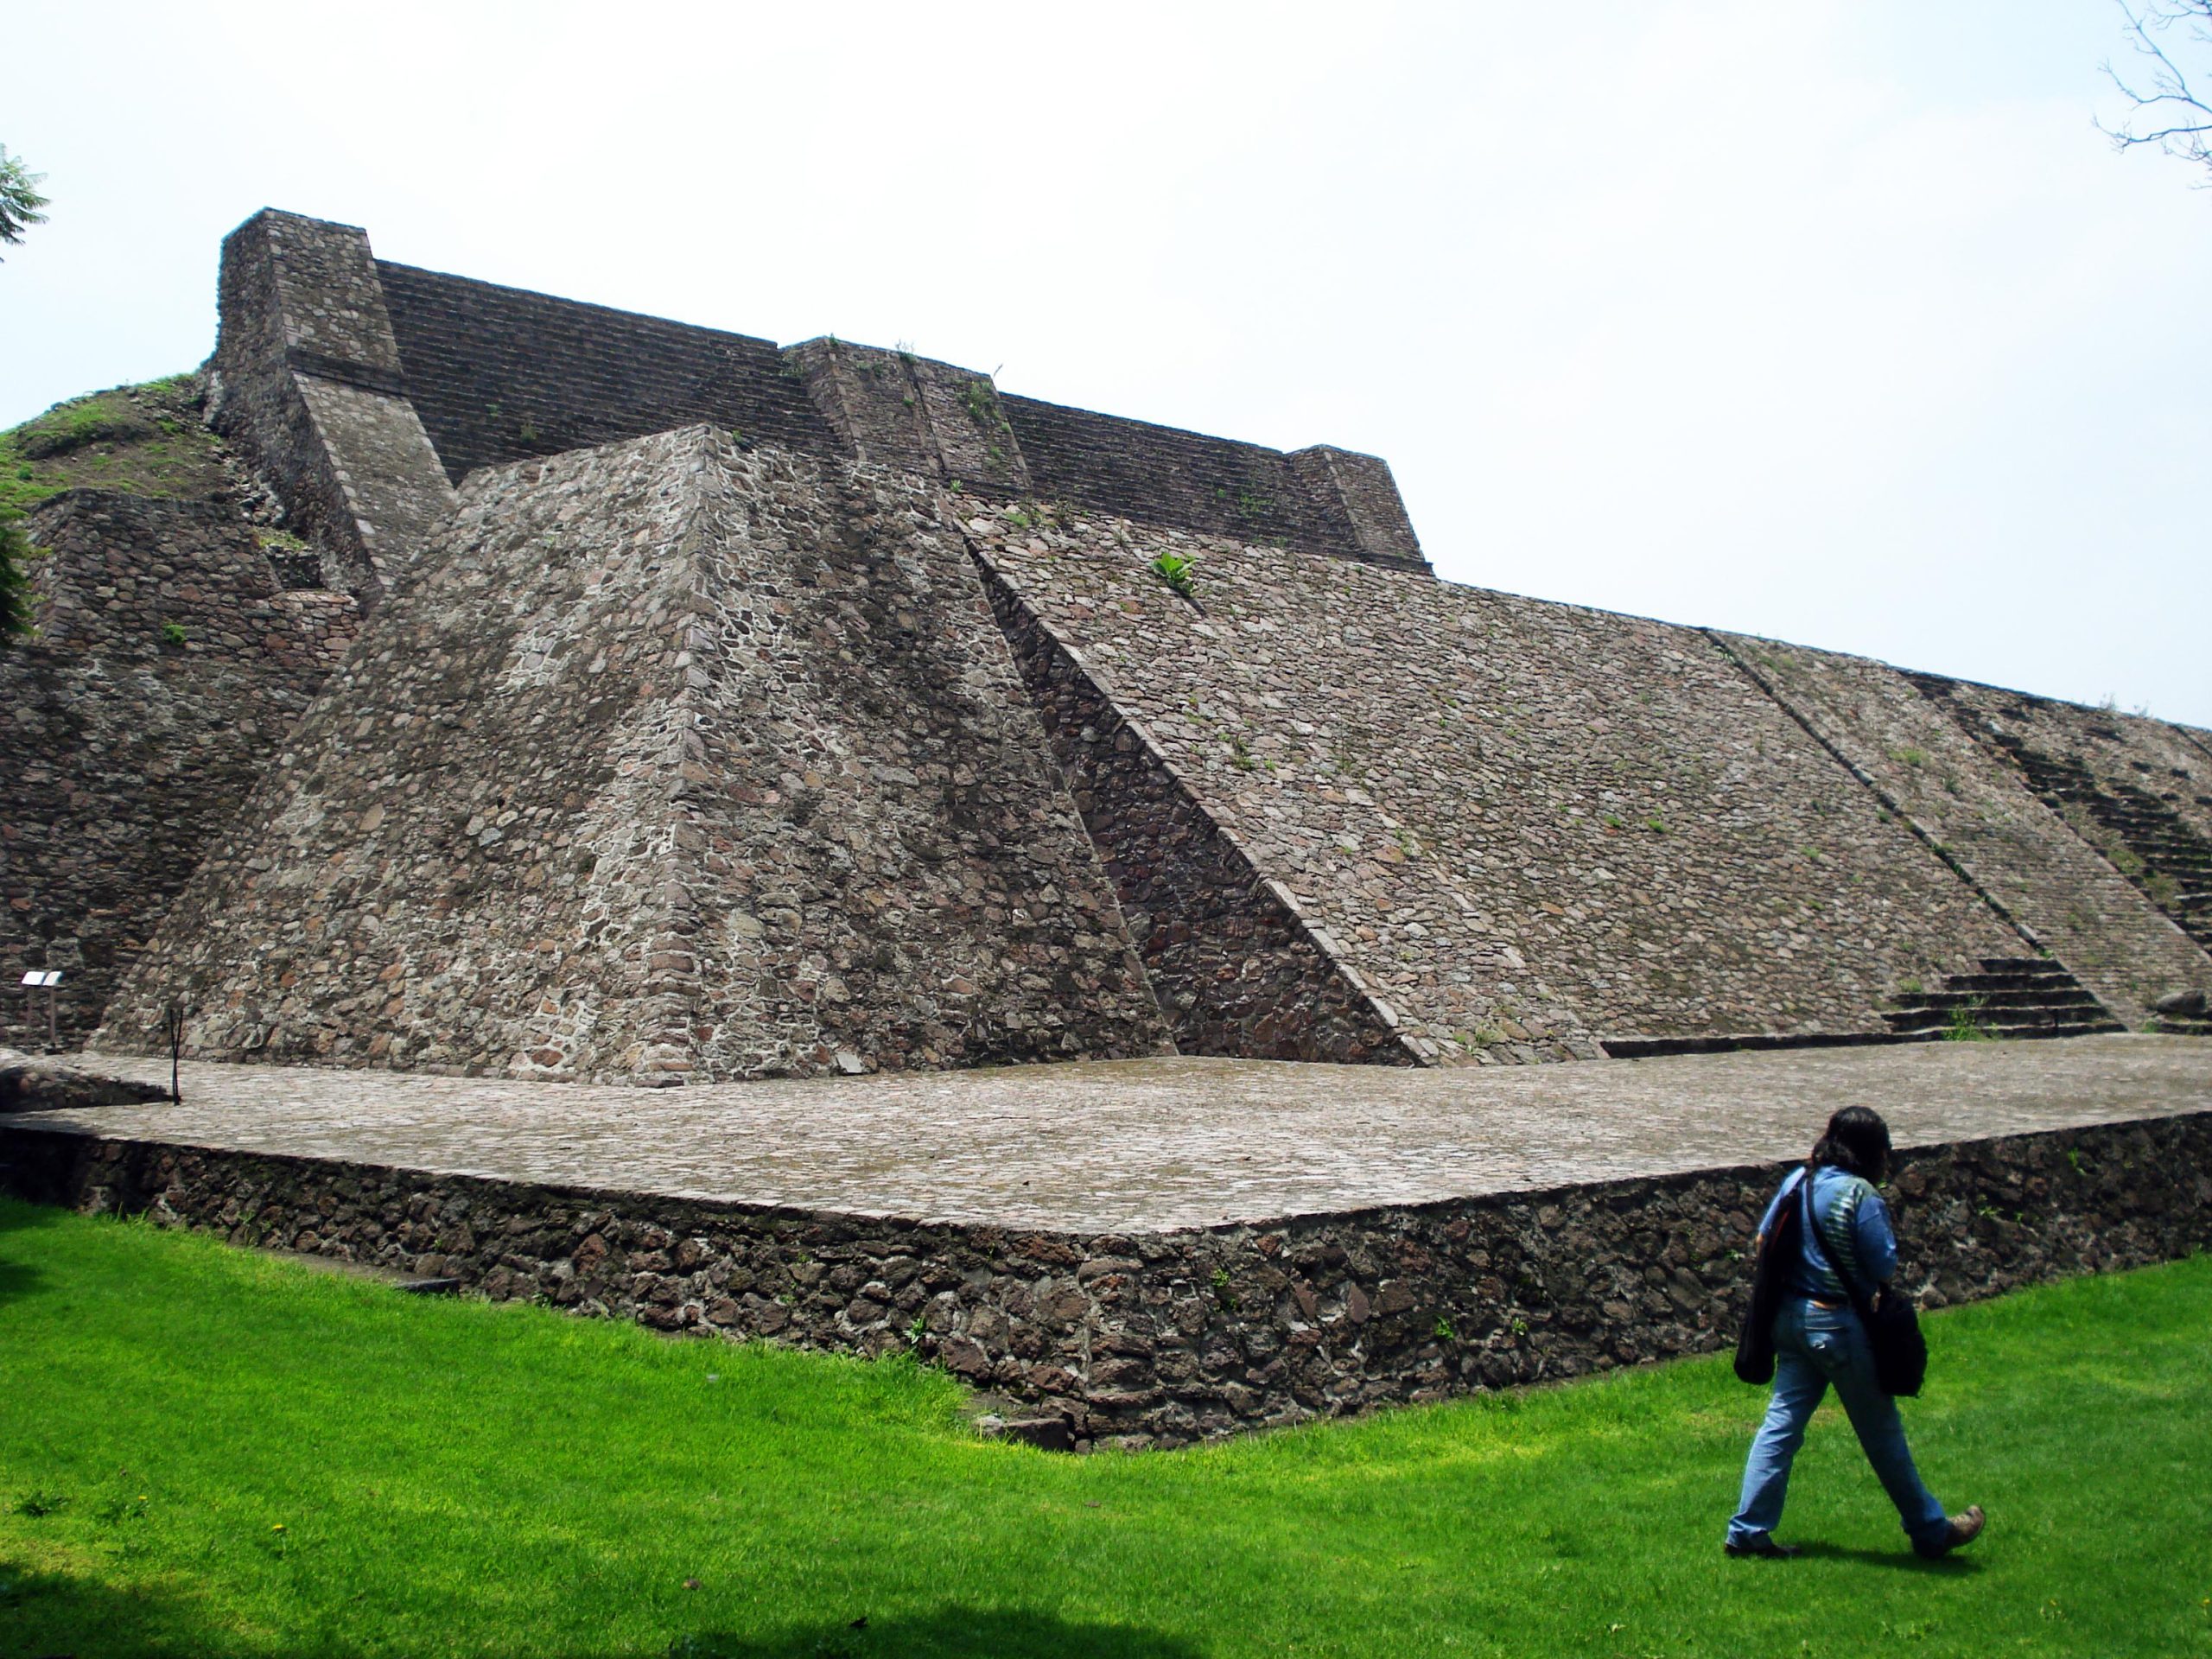 Construida por las civilizaciones chichimeca y azteca la piramide de Tenayuca tiene ocho capas